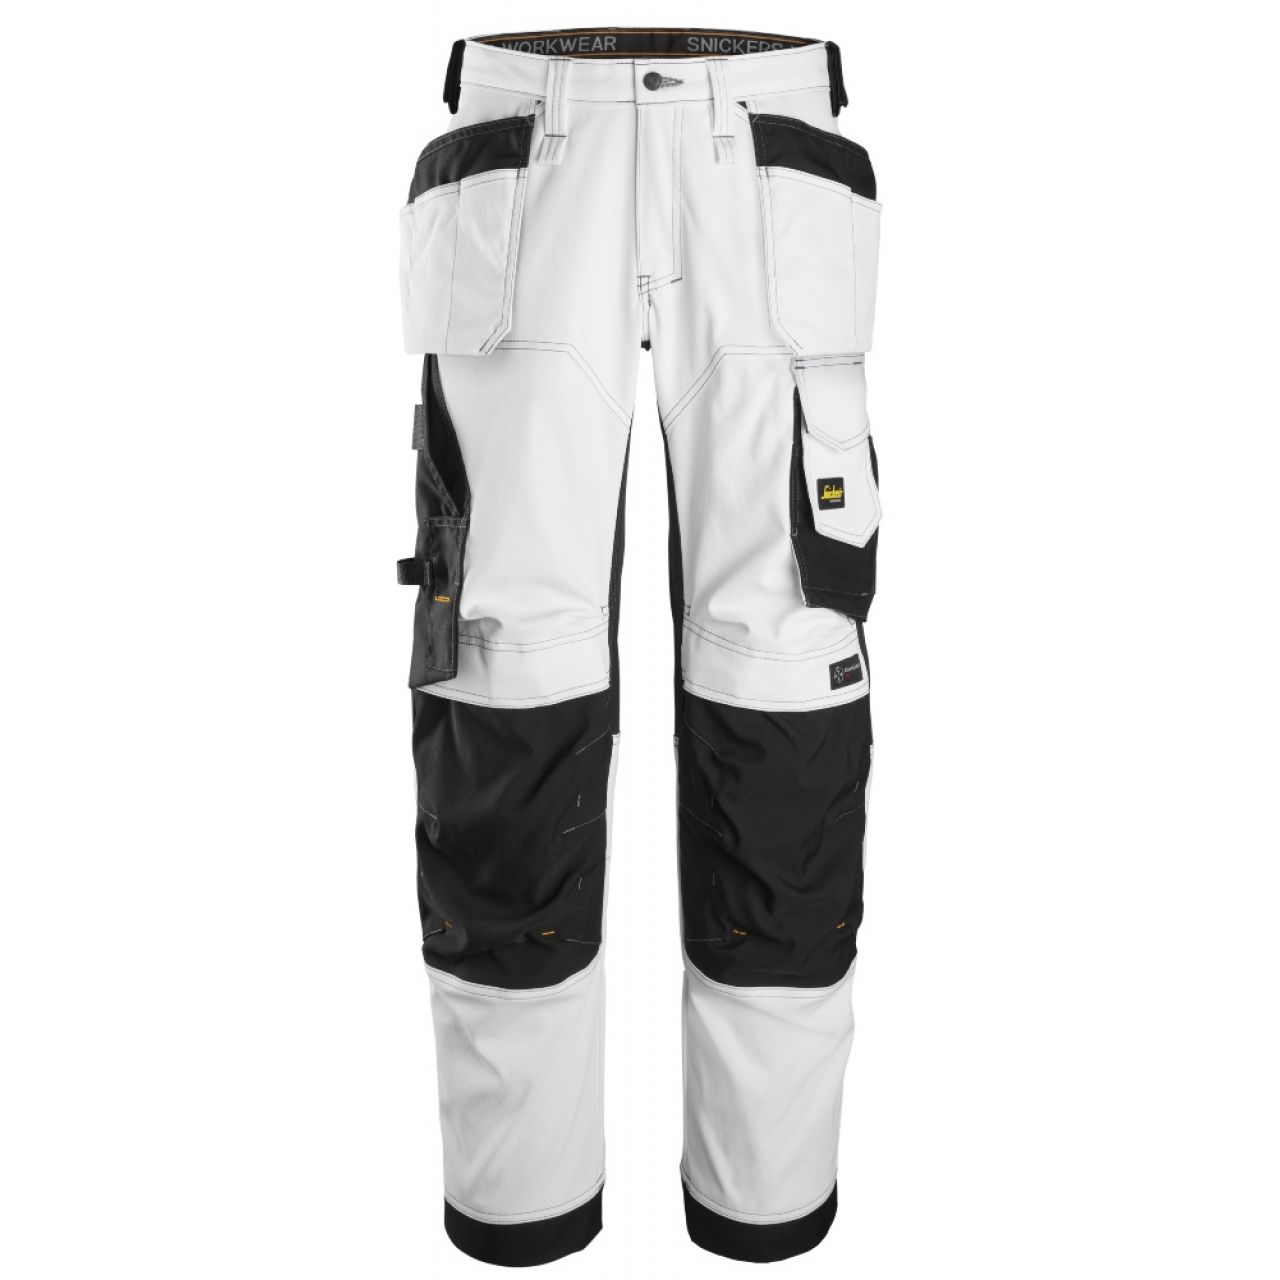 6251 Pantalones largos de trabajo elásticos de ajuste holgado con bolsillos flotantes AllroundWork blanco-negro talla 54